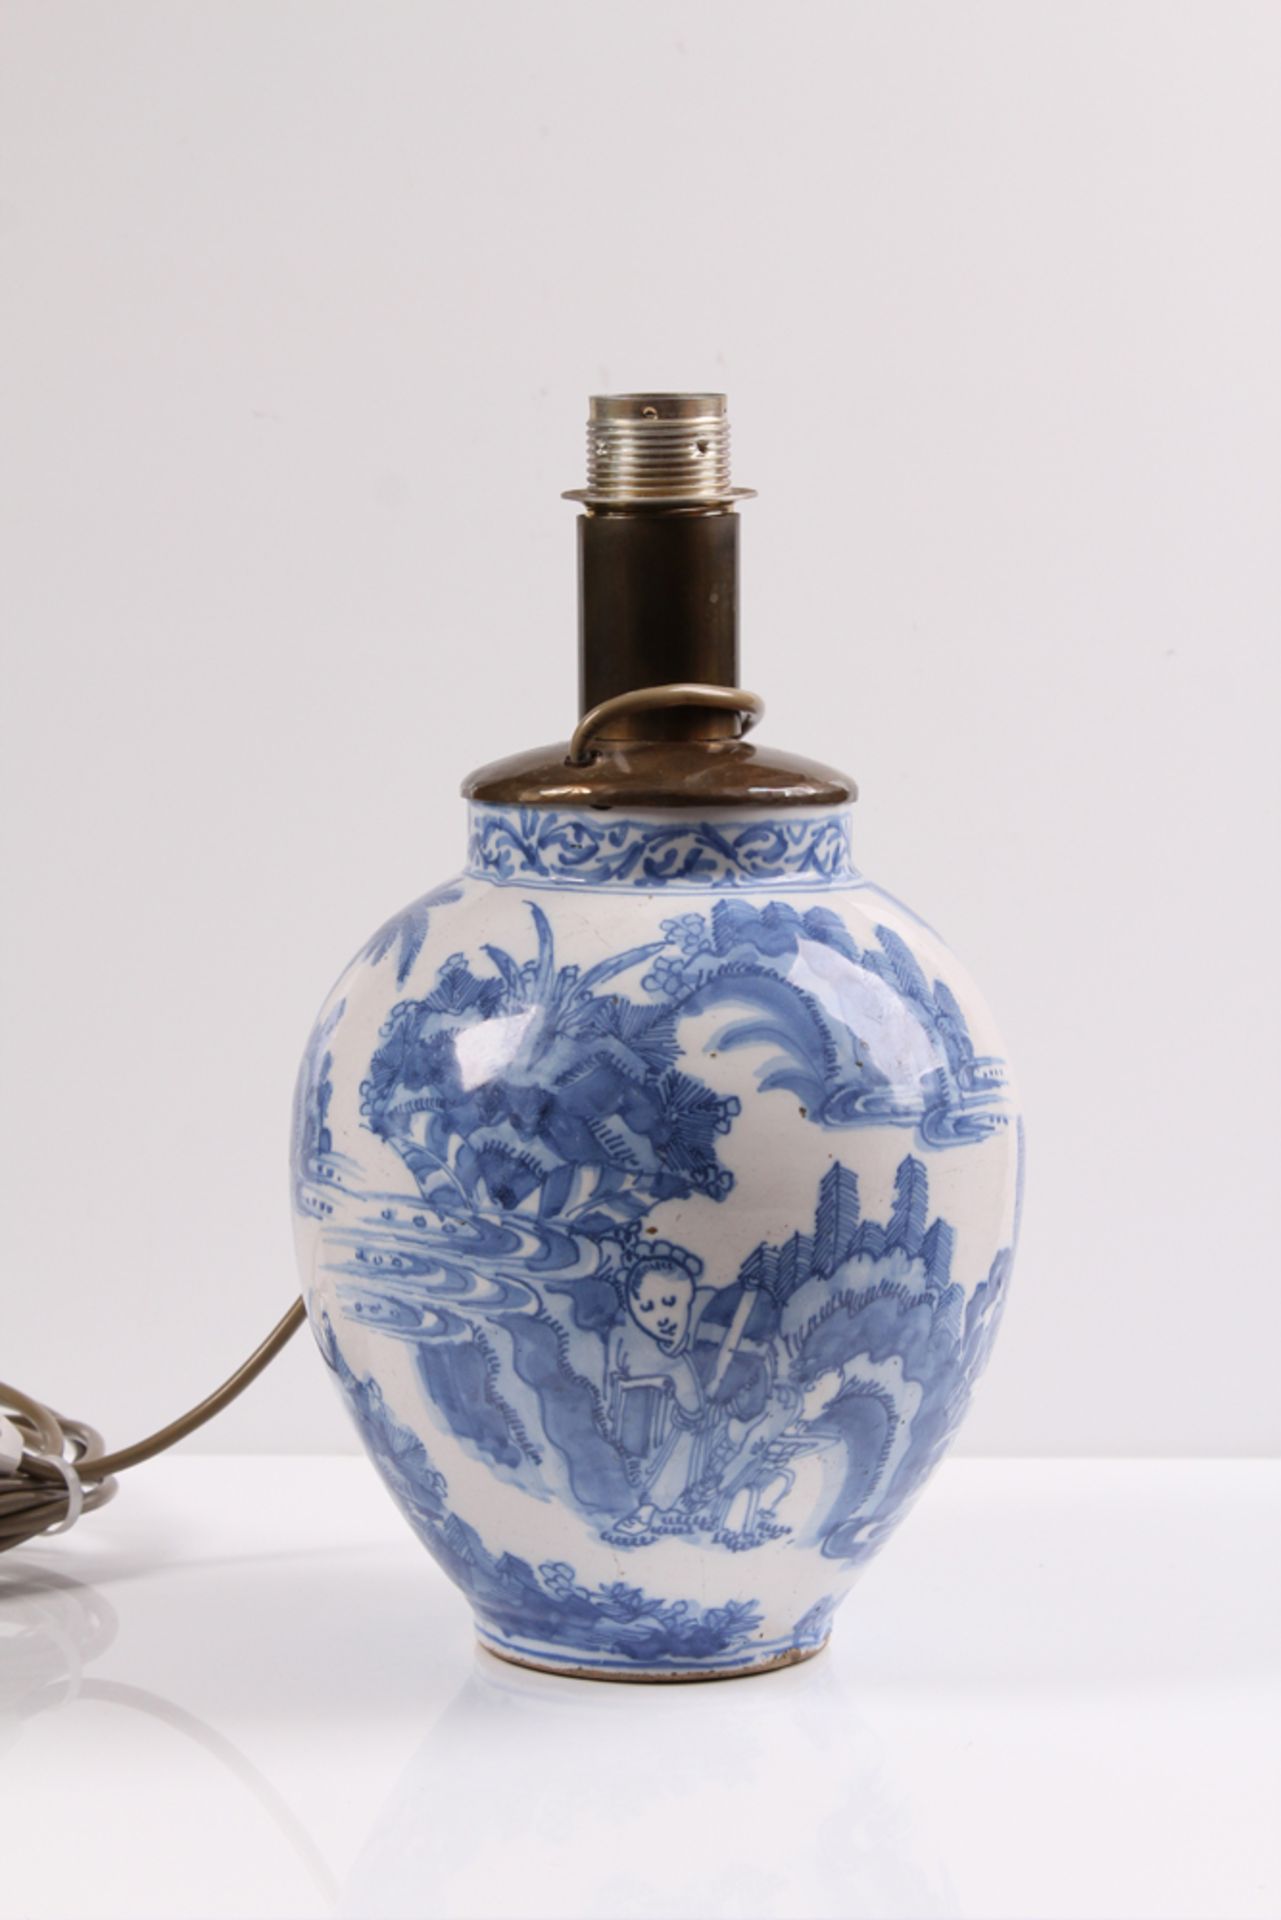 Tischlampe. Delft, 18. Jh. Porzellanlampenfuß mit Chinoiserien-Dekor. Elektrifiziert. H: 26